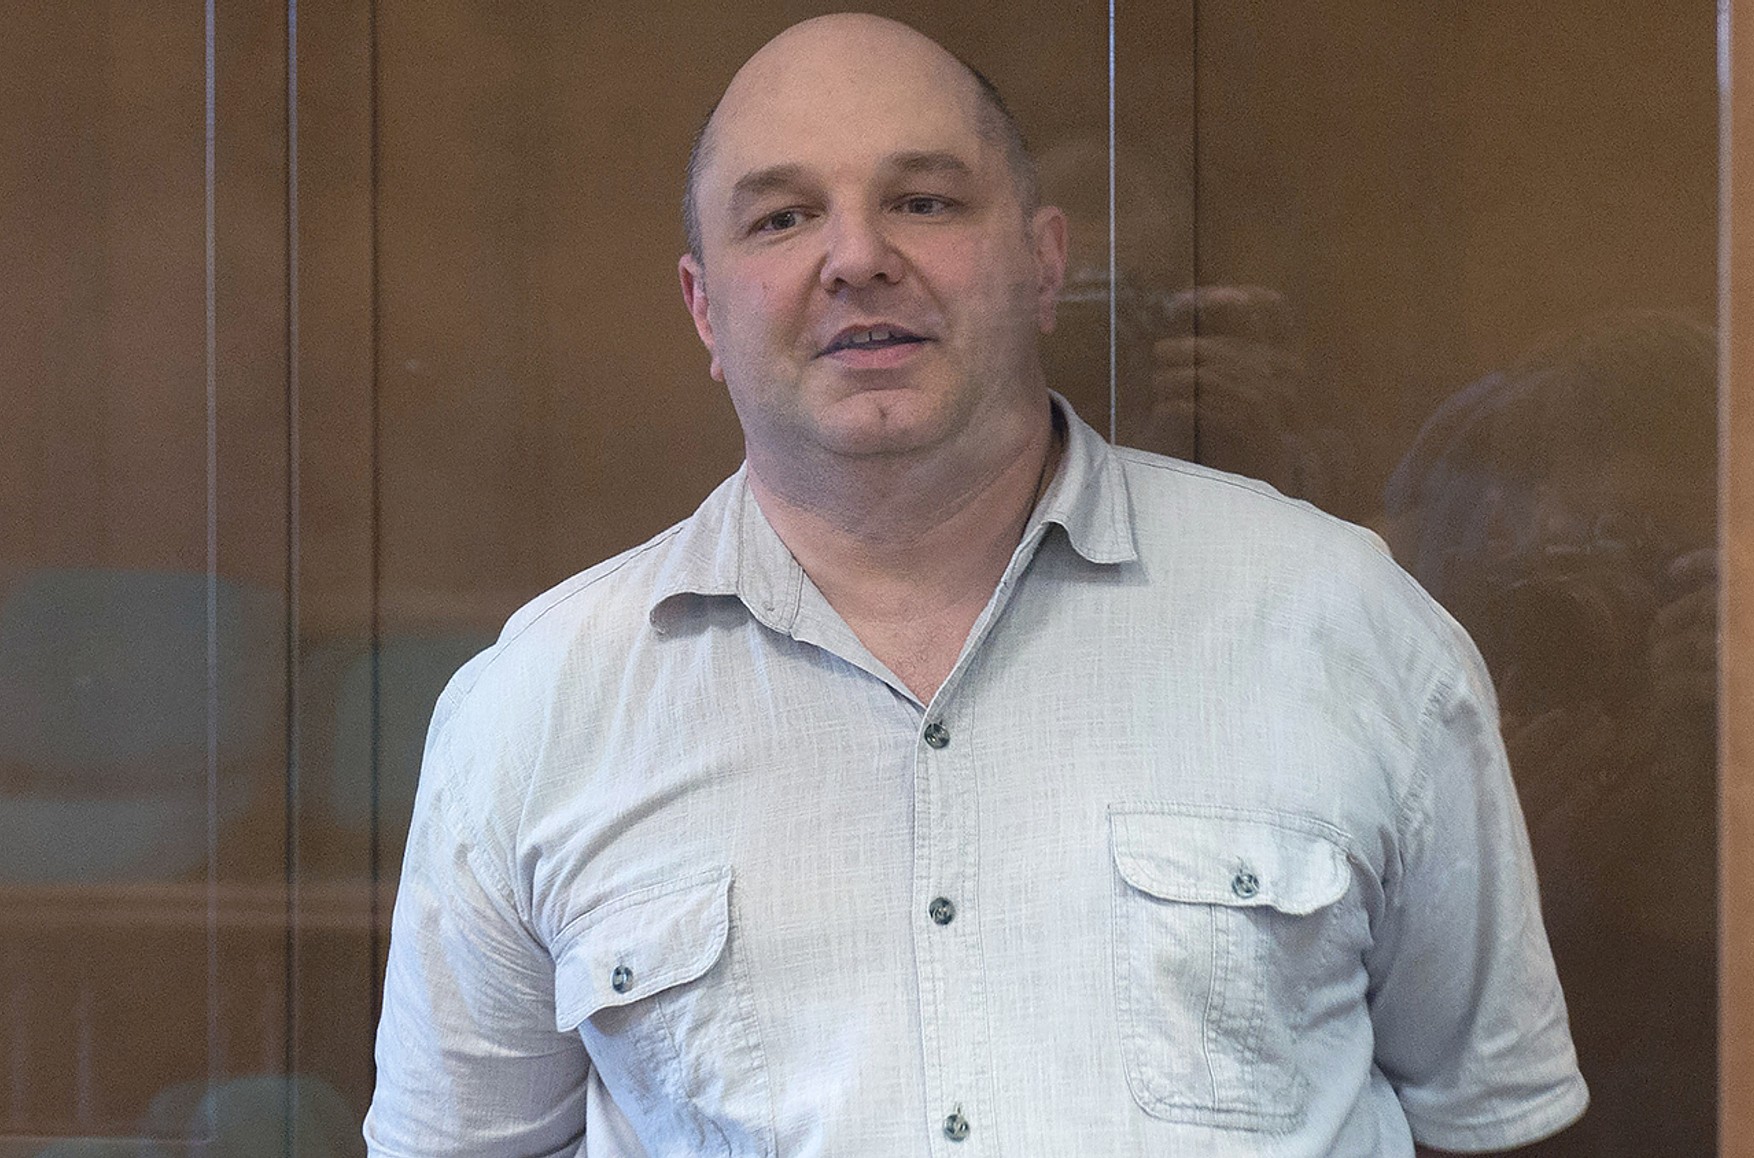 ЄСПЛ постановив переглянути справу засудженого за держзраду радіоінженера Кравцова